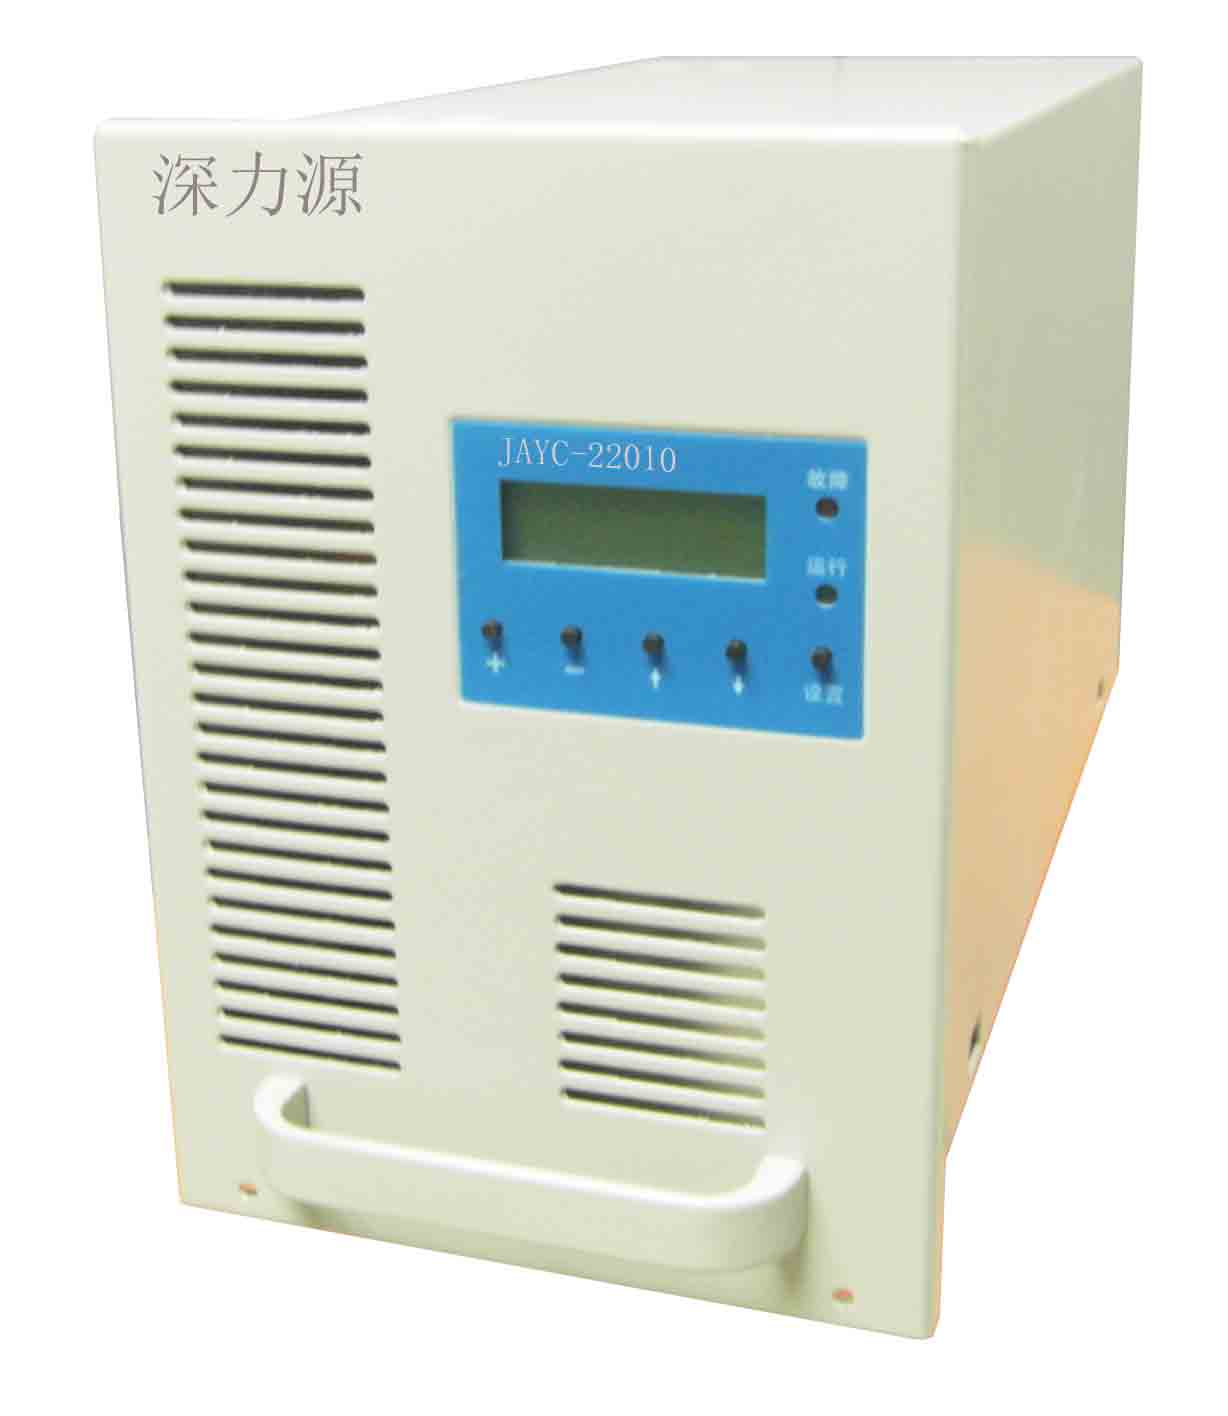 JAYC-22010直流屏充电模块特点介绍|广东JAYC-22010充电模块